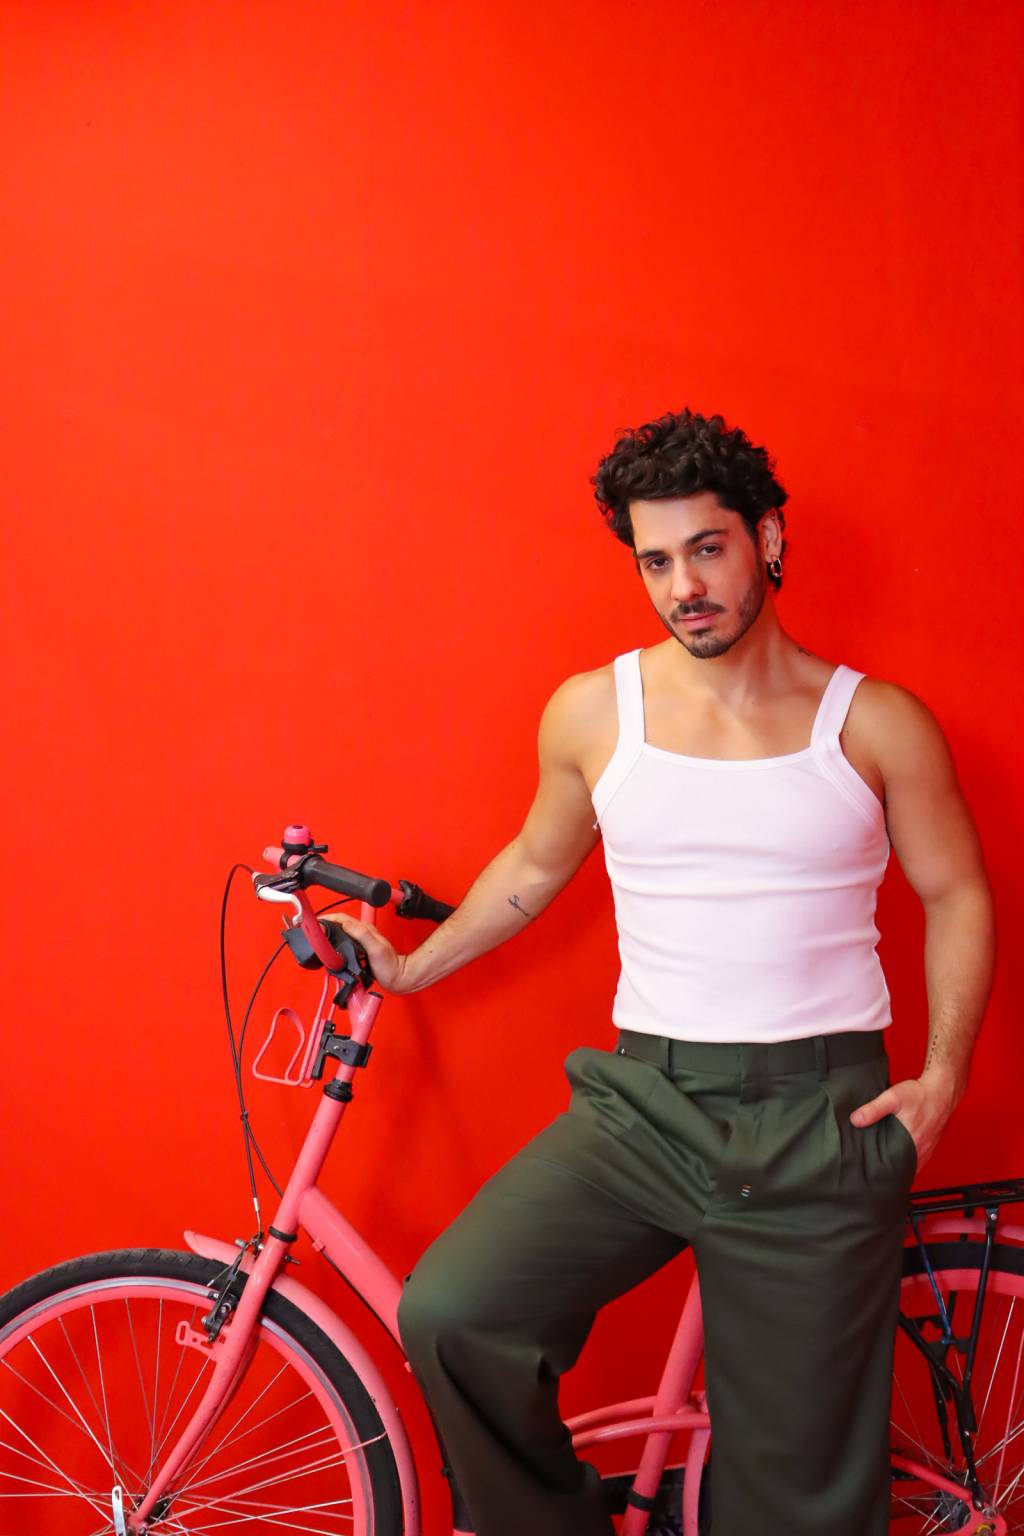 Diego posa sentado em bicicleta rosa e parede de fundo bem vermelho. Veste regata branca e calça escura.